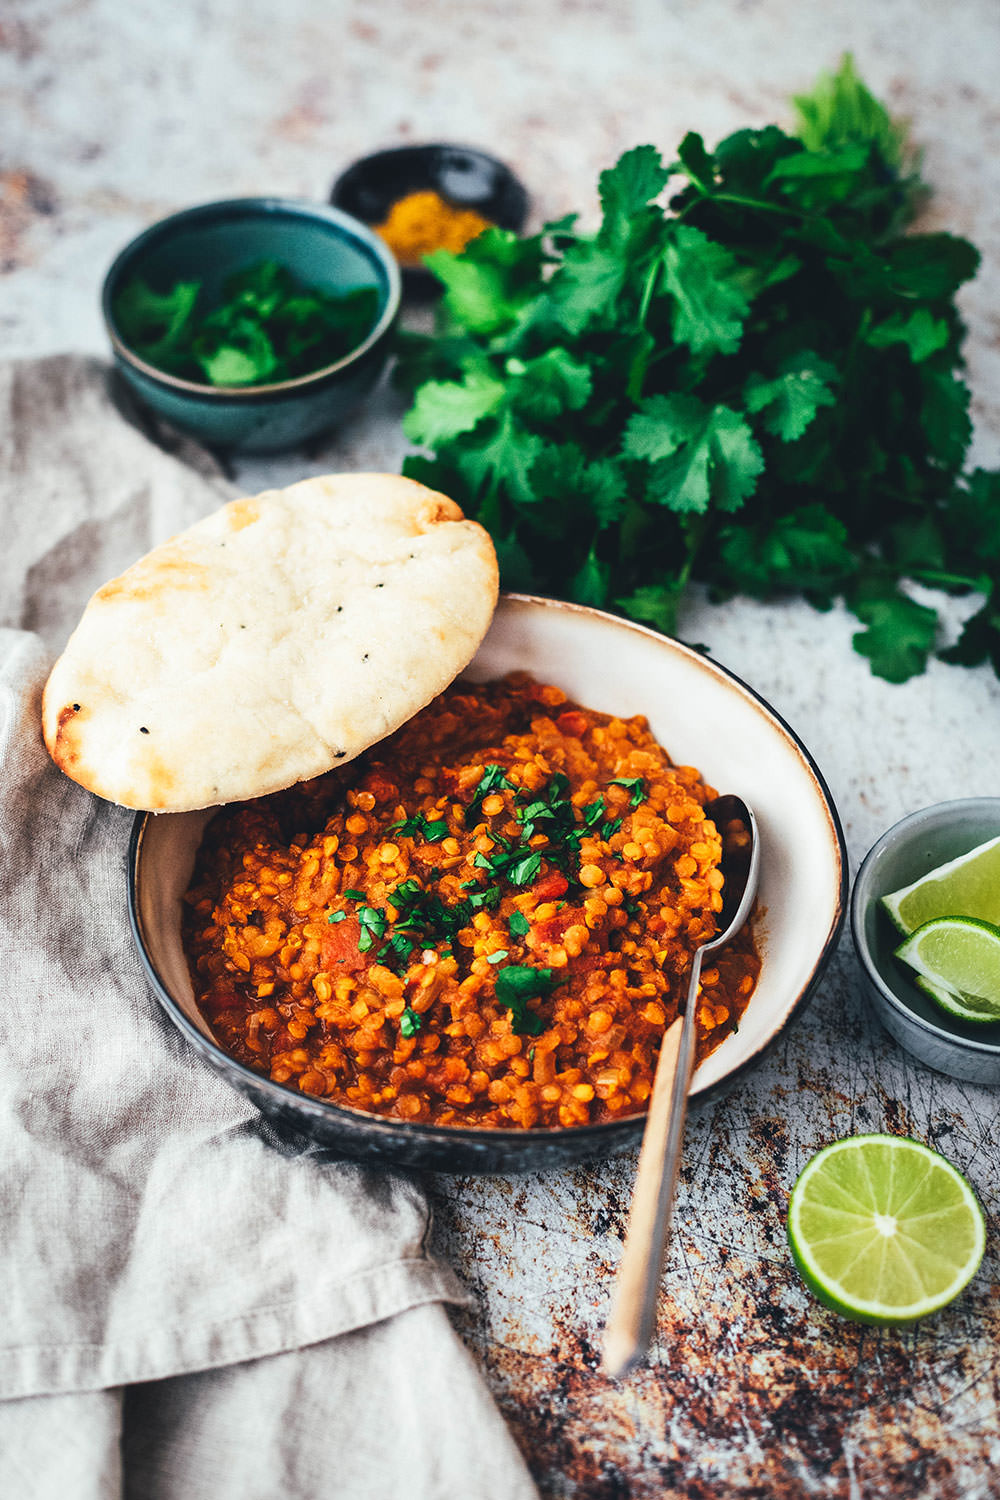 Rezept für Rote Linsen Dal - vegan und blitzschnell auf dem Tisch! Indisches Curry aus roten Linsen, Tomaten und Kokosmilch (Masoor Dhal), serviert mit veganem Naan-Brot oder Reis. Ein würziges Eintopf-Rezept, das immer schon vegan ist. #veganuary | moeyskitchen.com